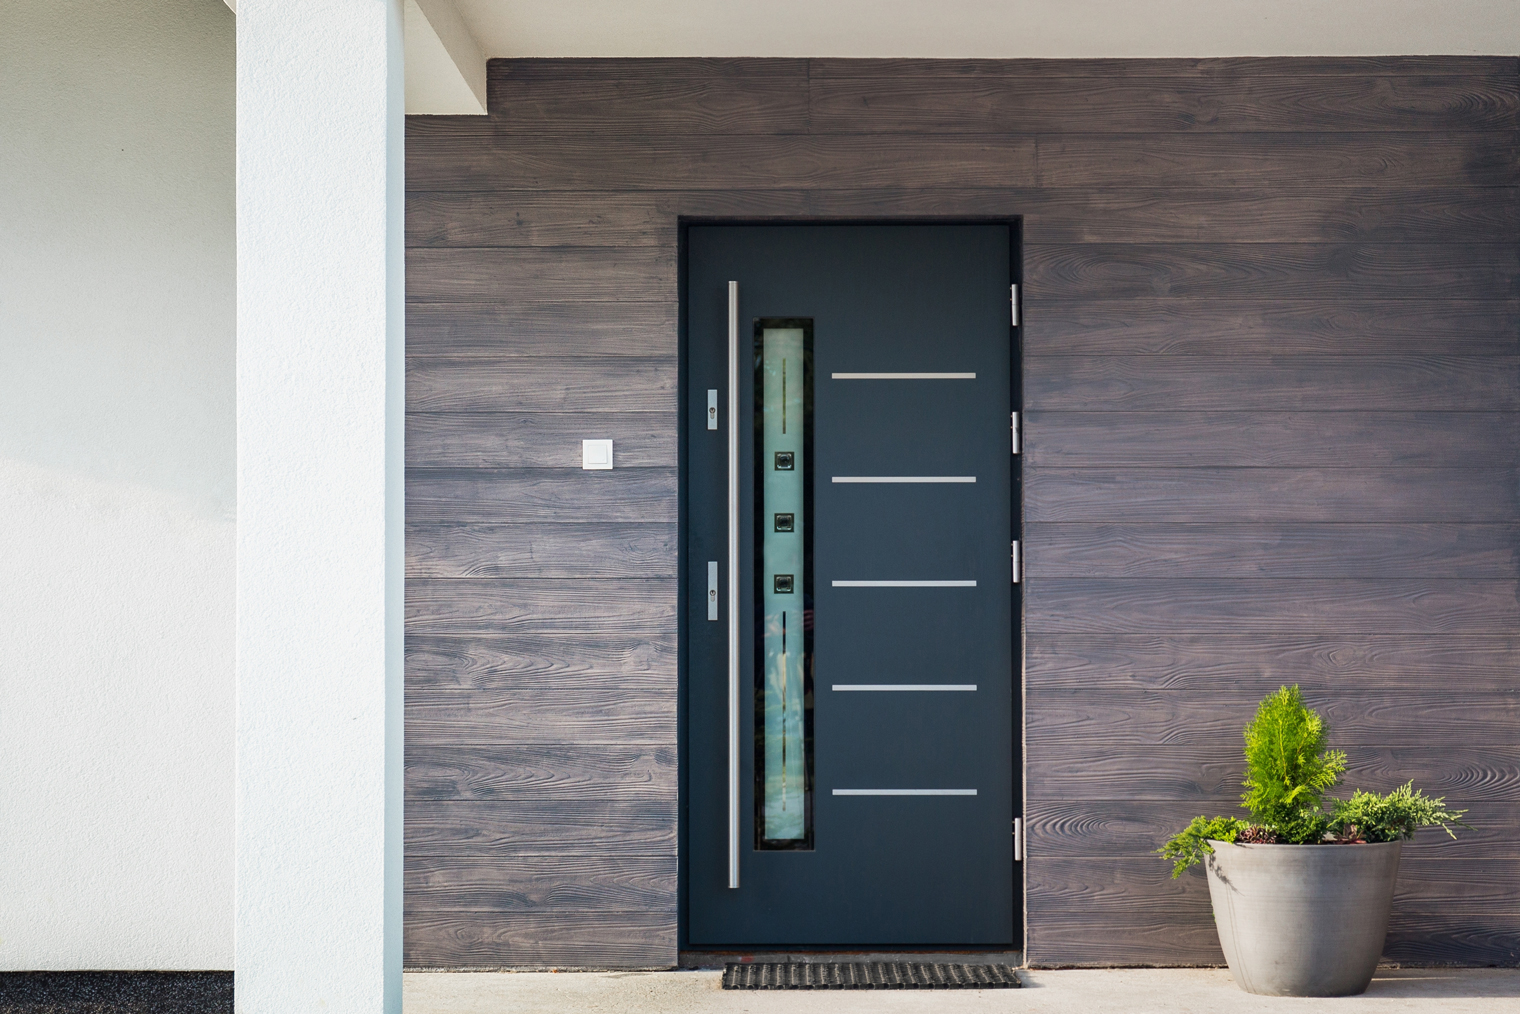 При выборе двери часто ориентируются на эстетику и стиль, особенно если речь про южные регионы. Фотография: Leszek Szelest / Shutterstock / FOTODOM